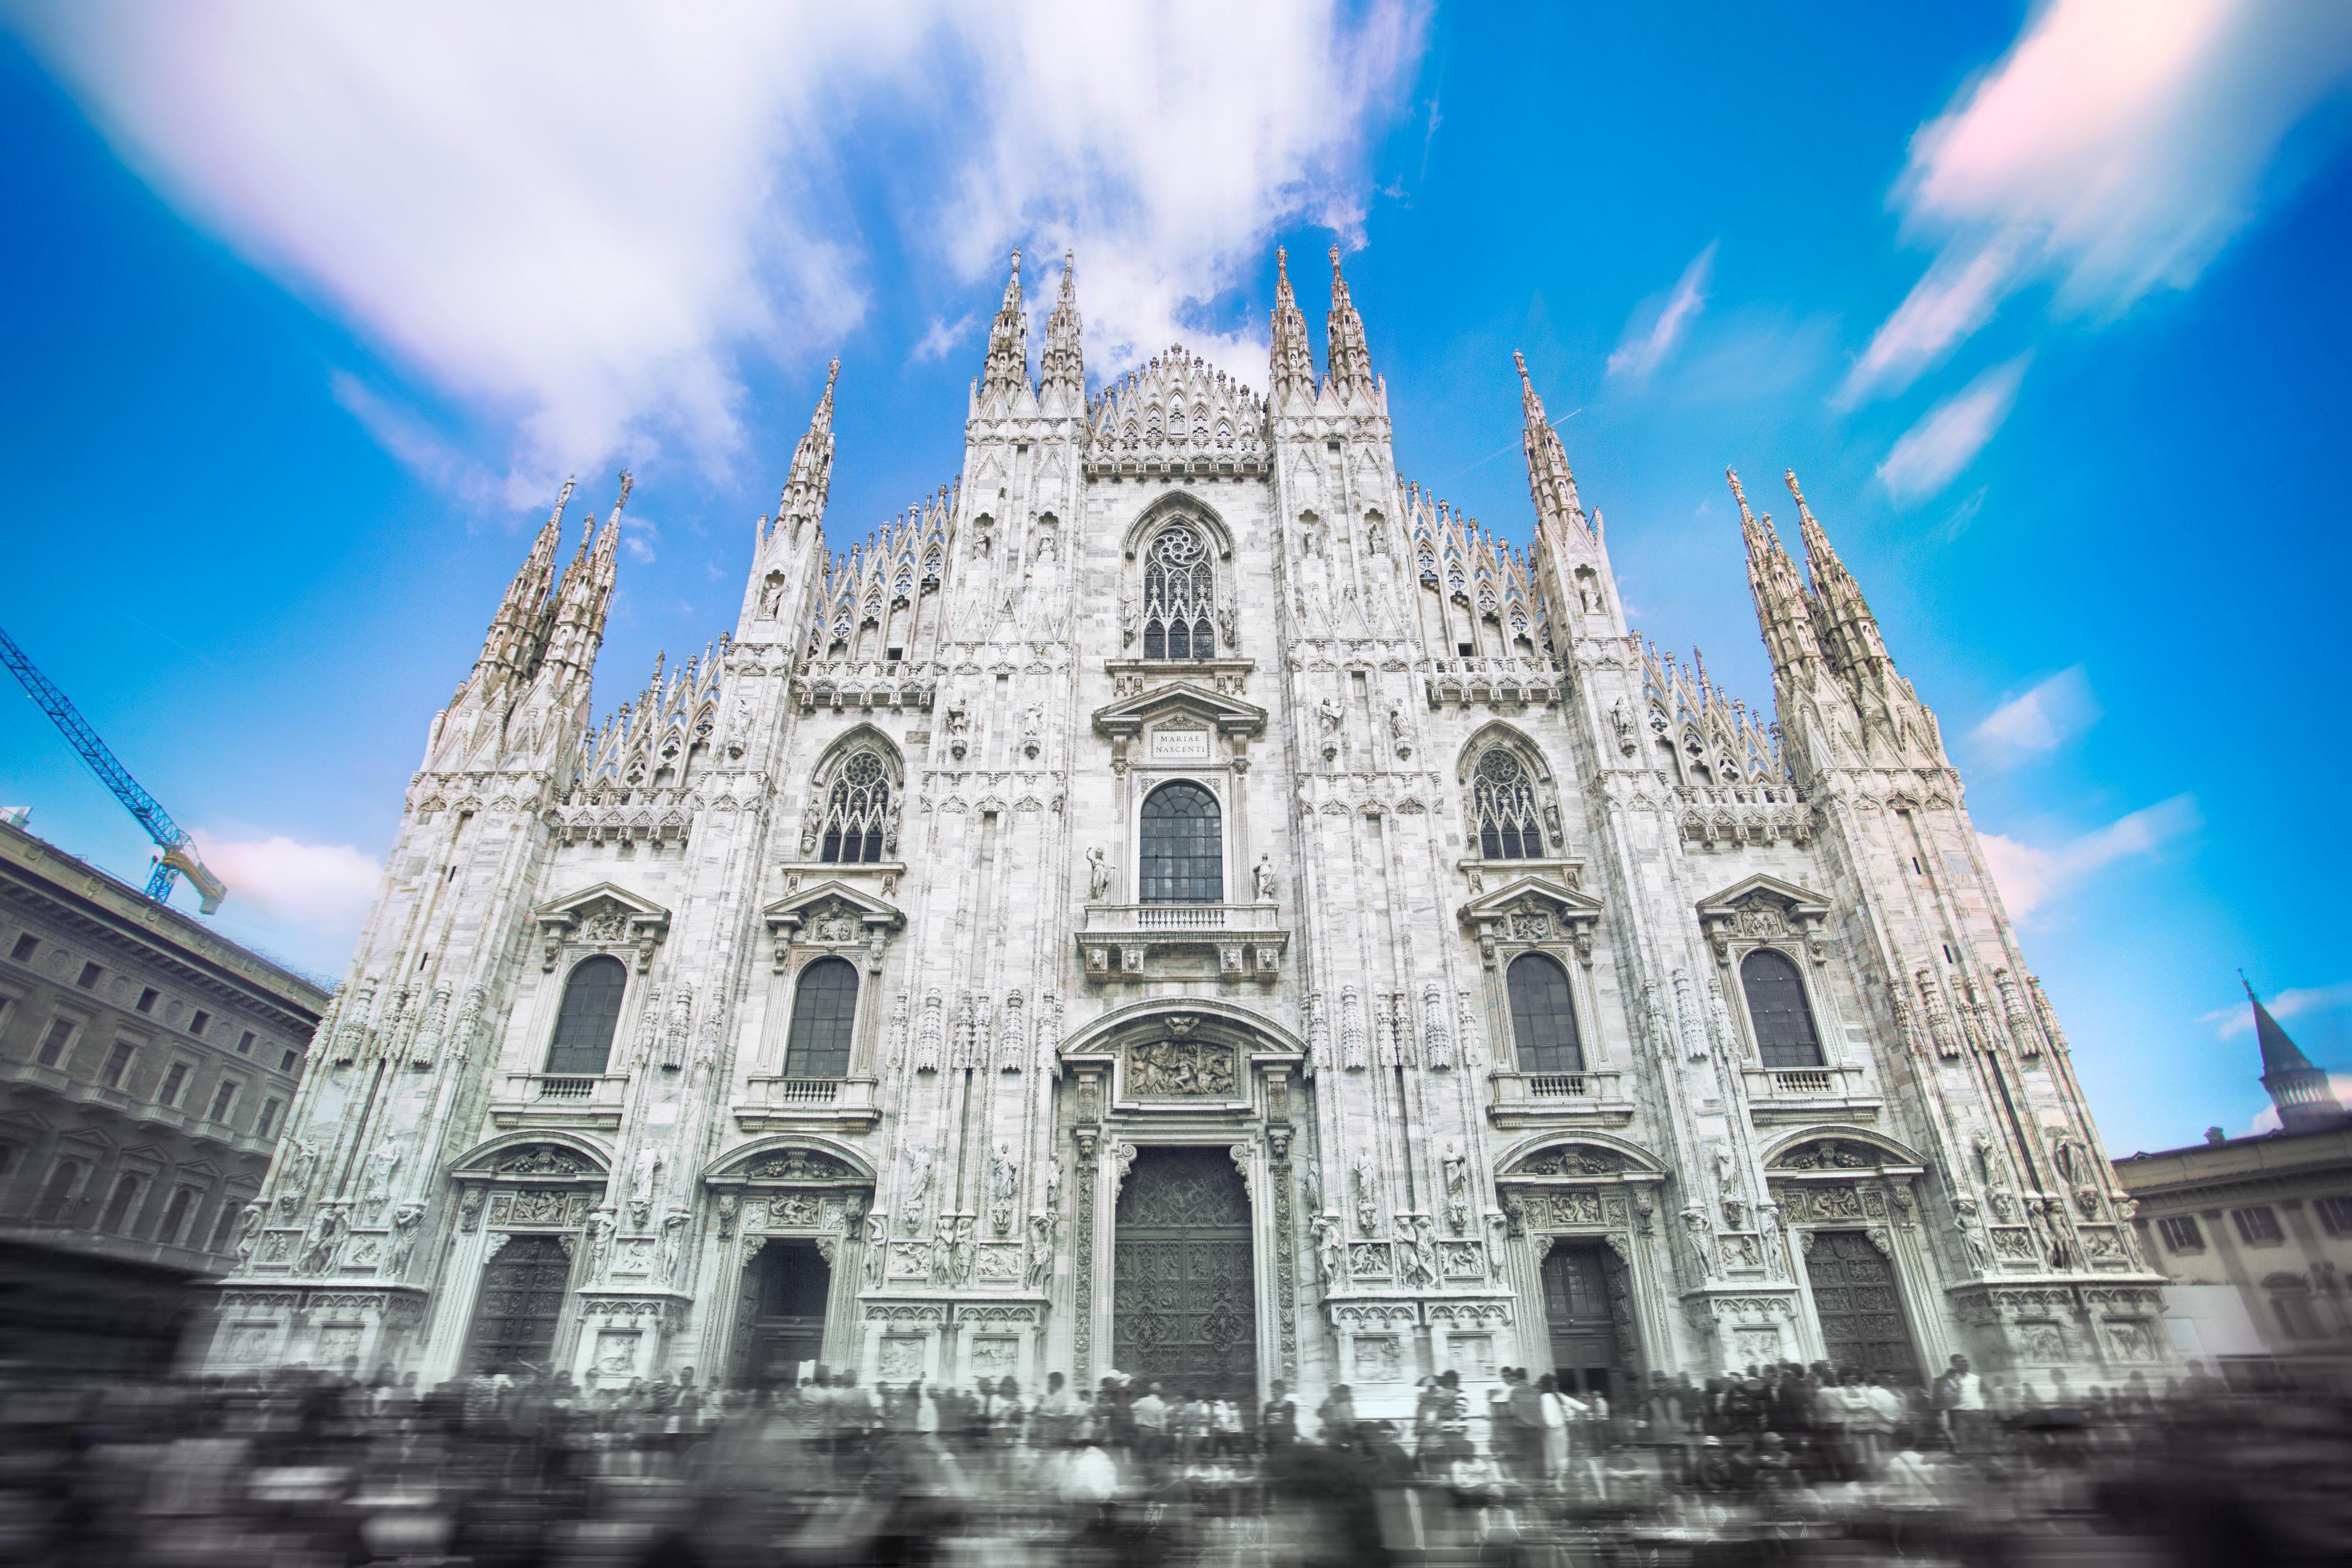 米兰大教堂是世界第几大教堂?